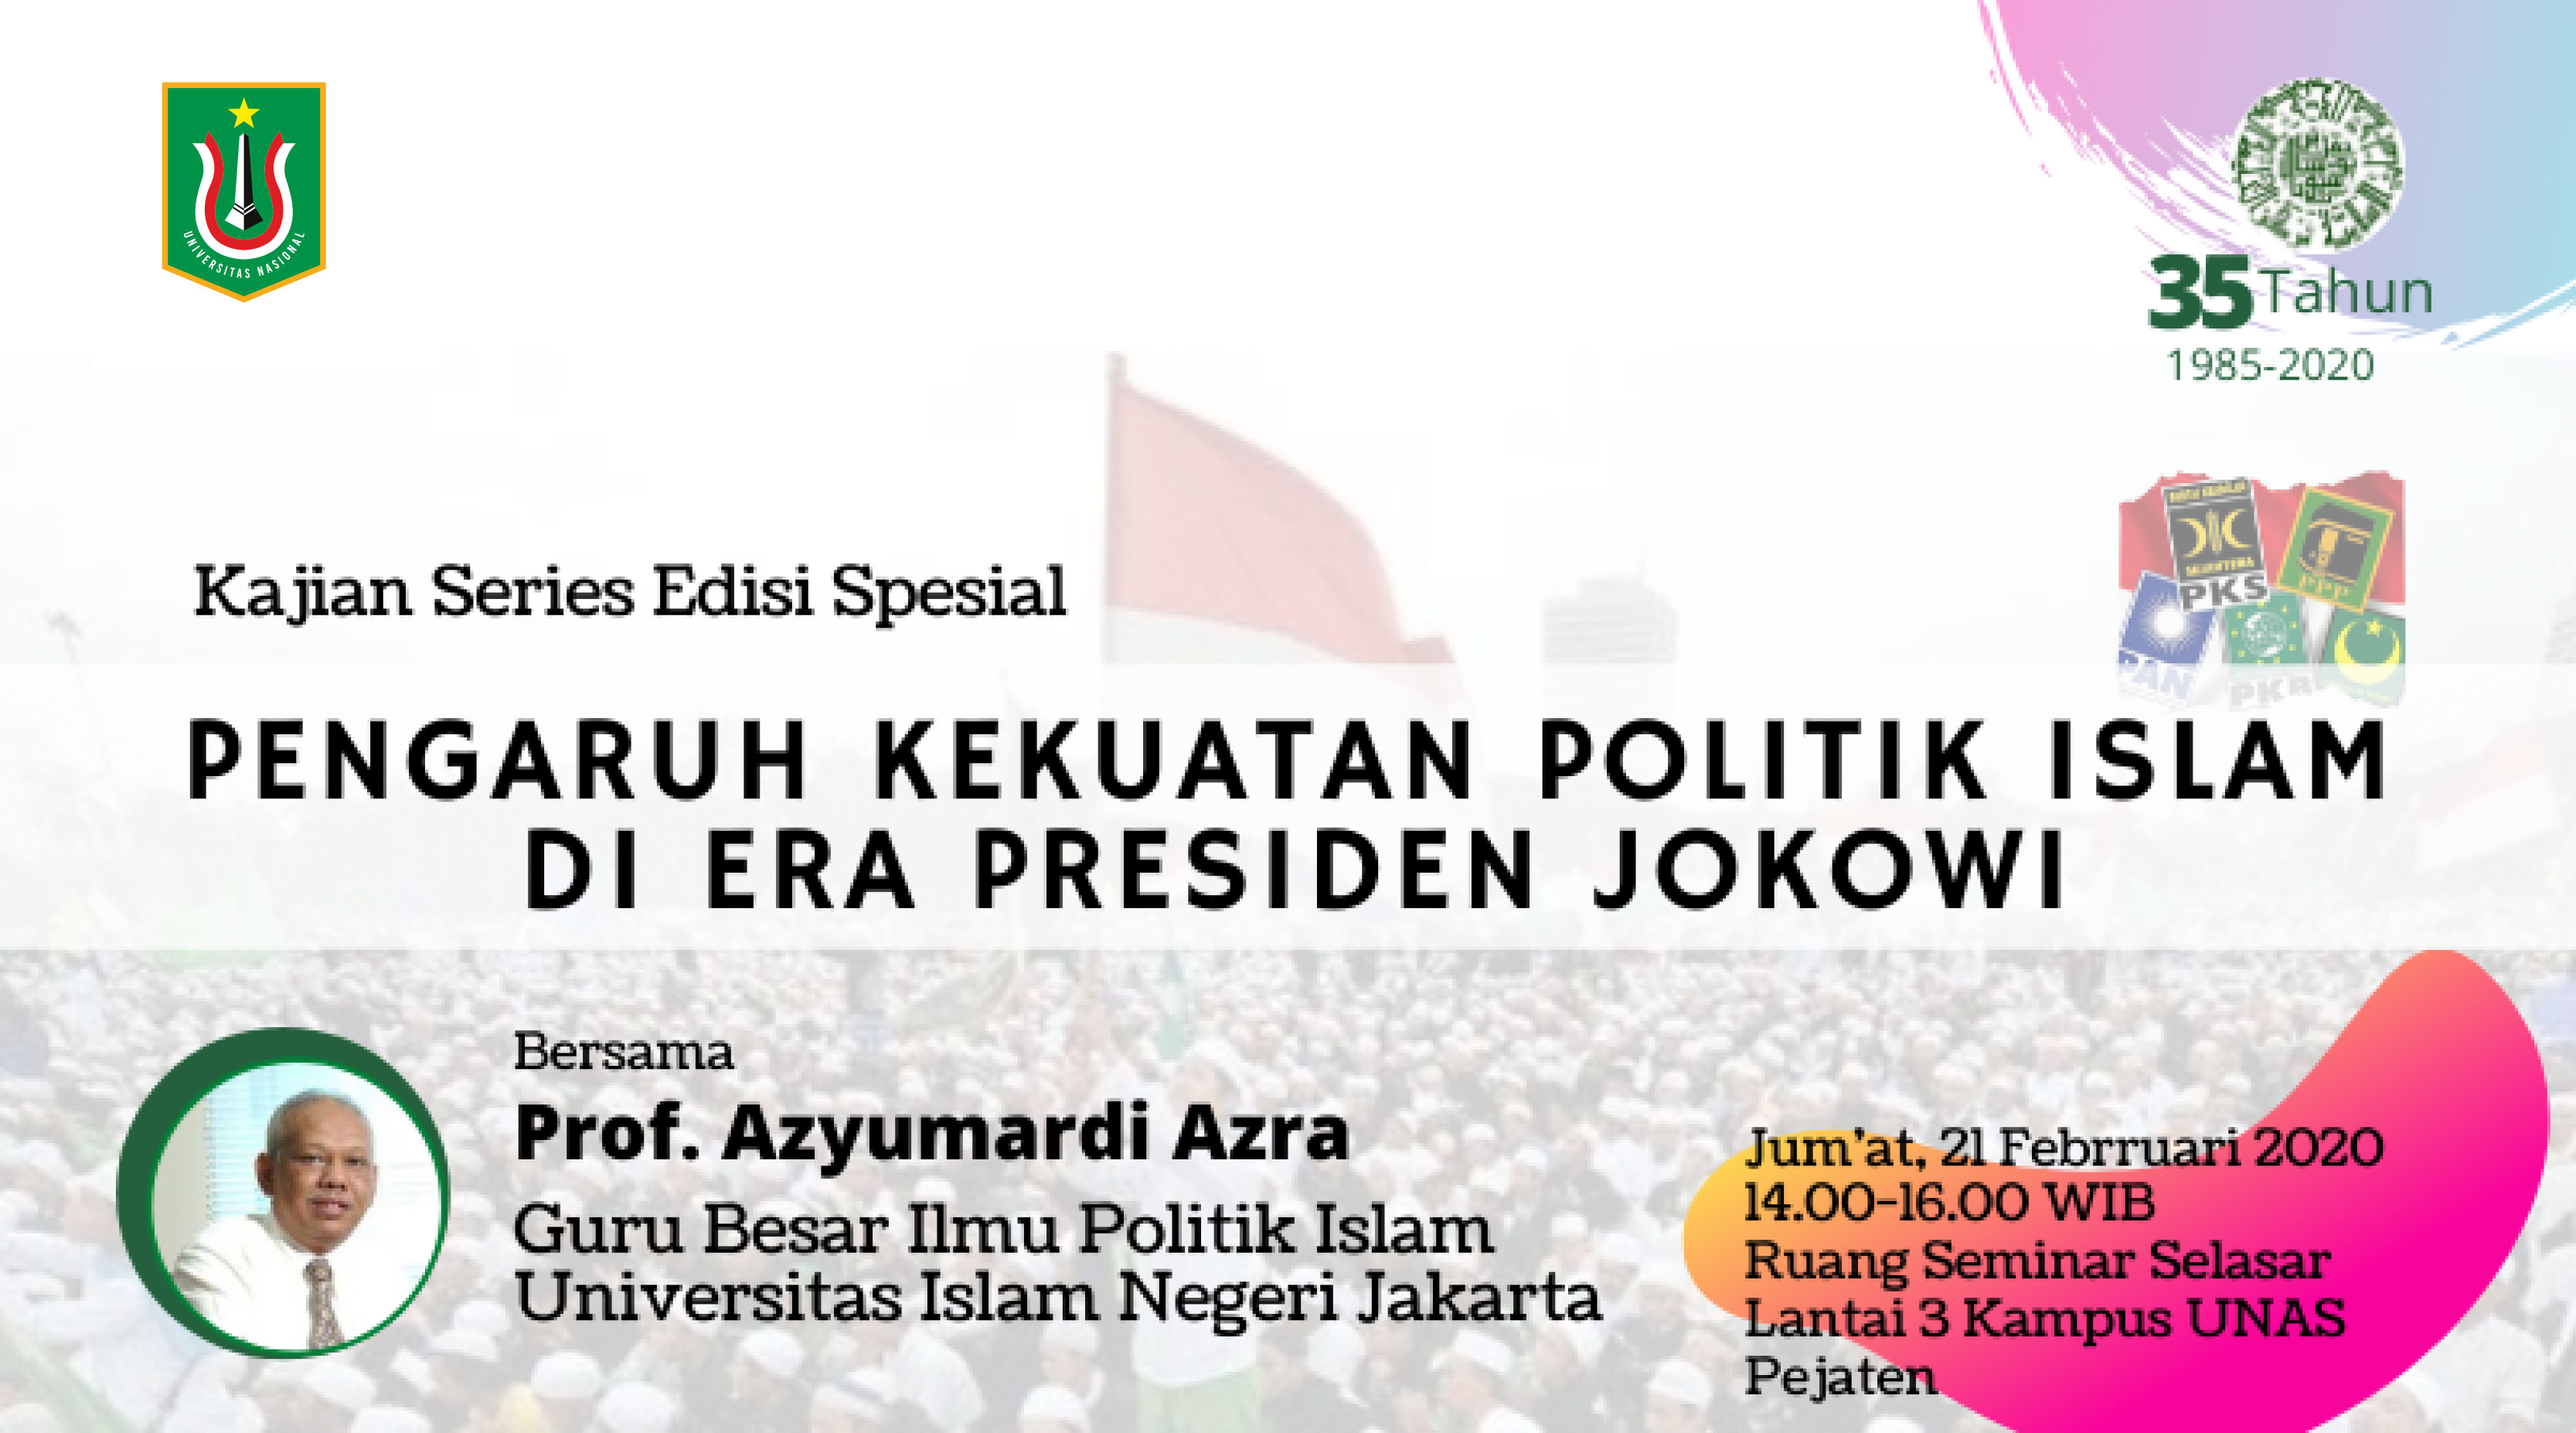 Kajian Series Edisi Spesial "Pengaruh Kekuatan Politik Islam di Era Presiden Jokowi"